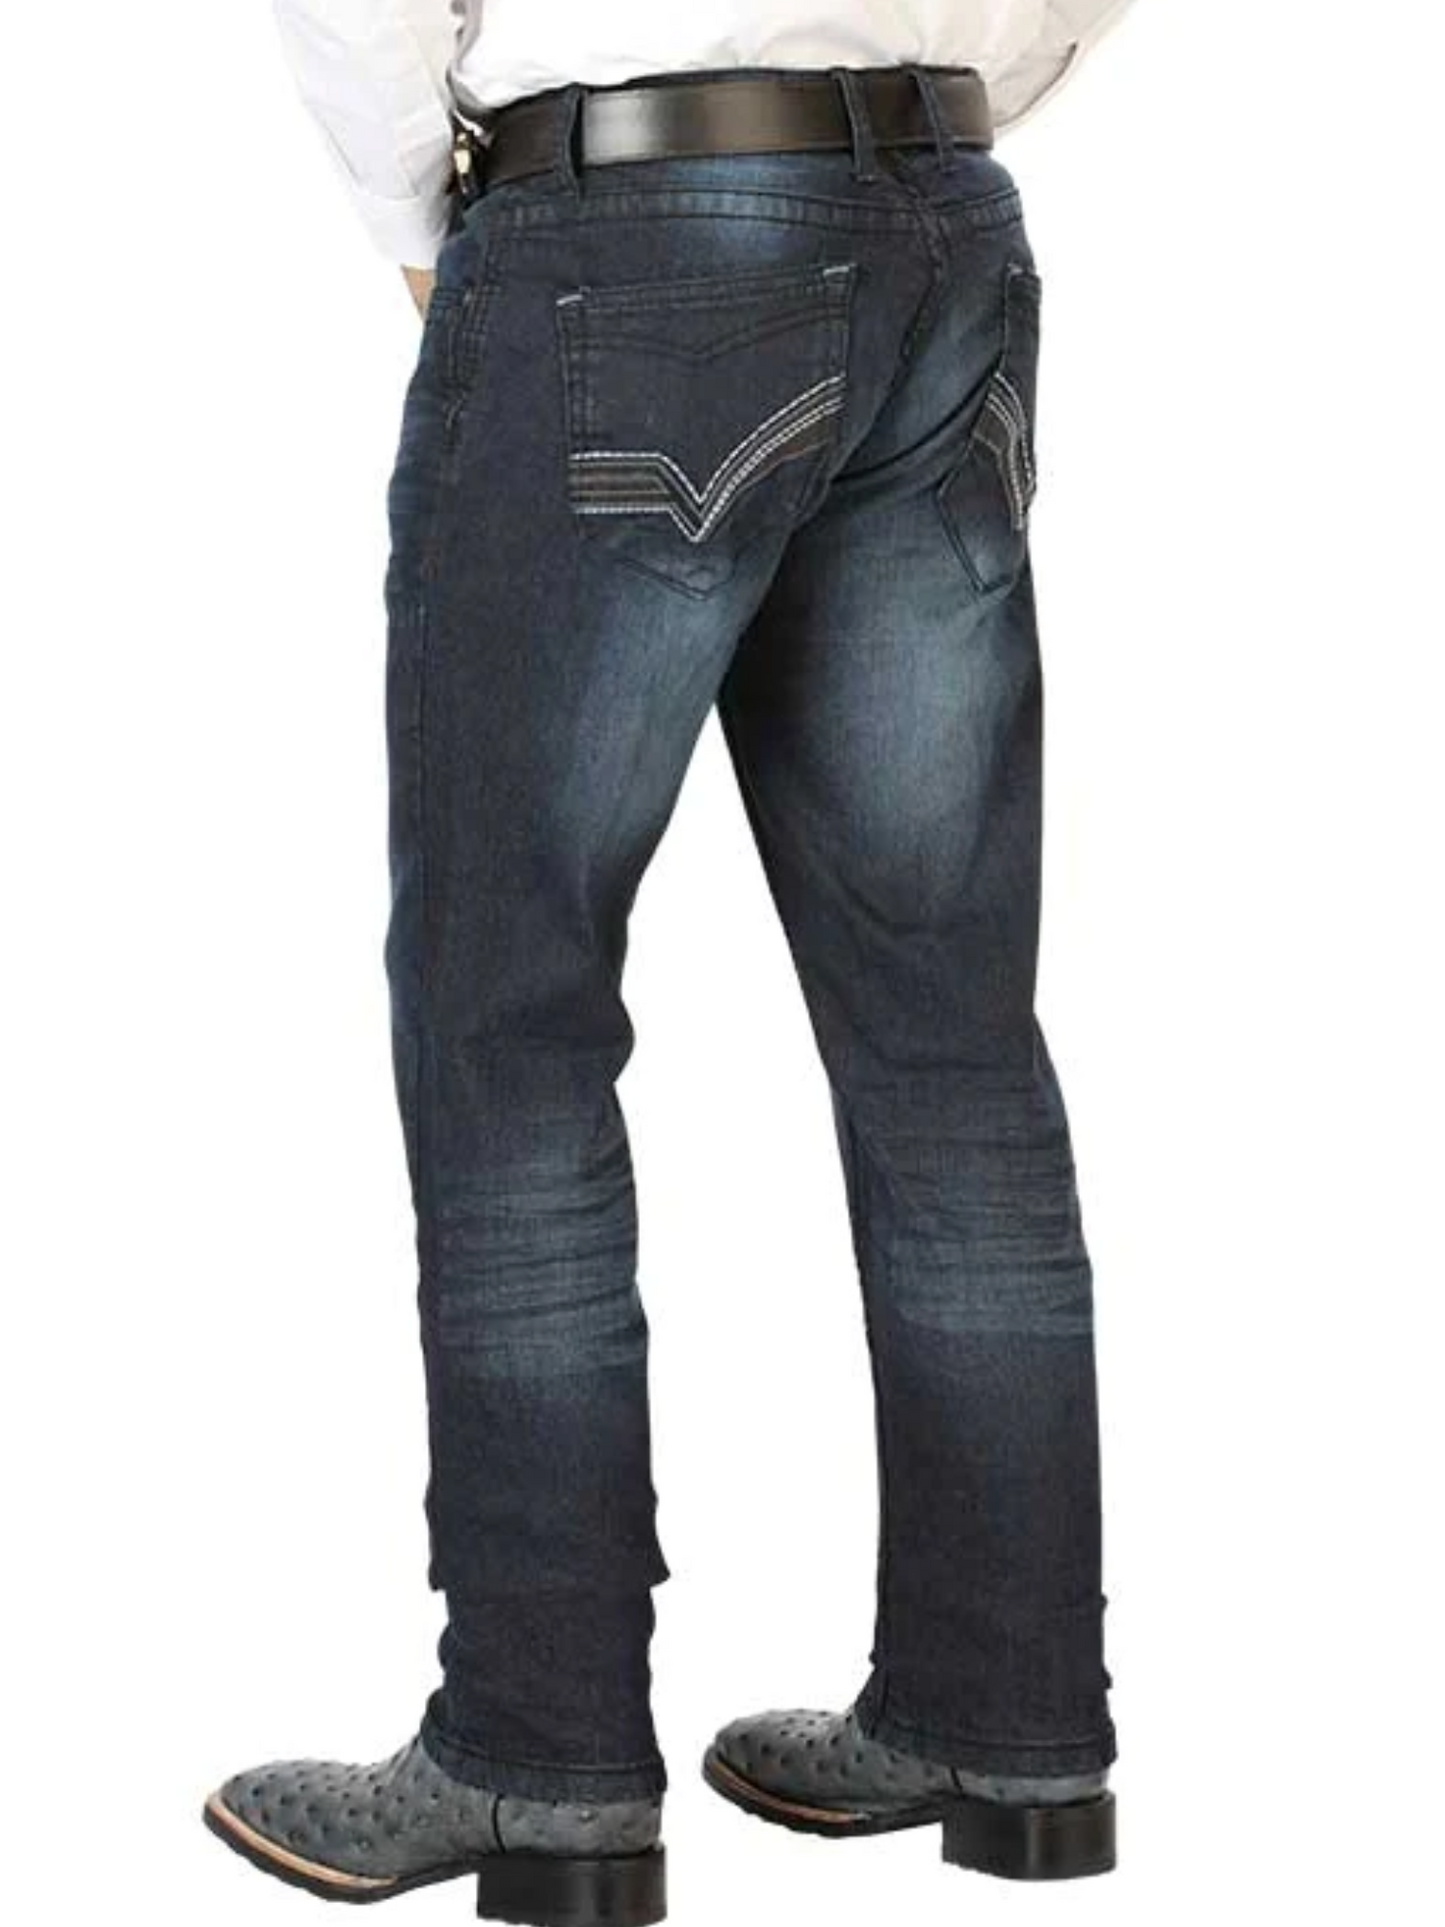 Pantalon de Mezclilla Casual Azul Oscuro para Hombre 'El Norteño' - ID: 126634 Denim Jeans El Norteño 